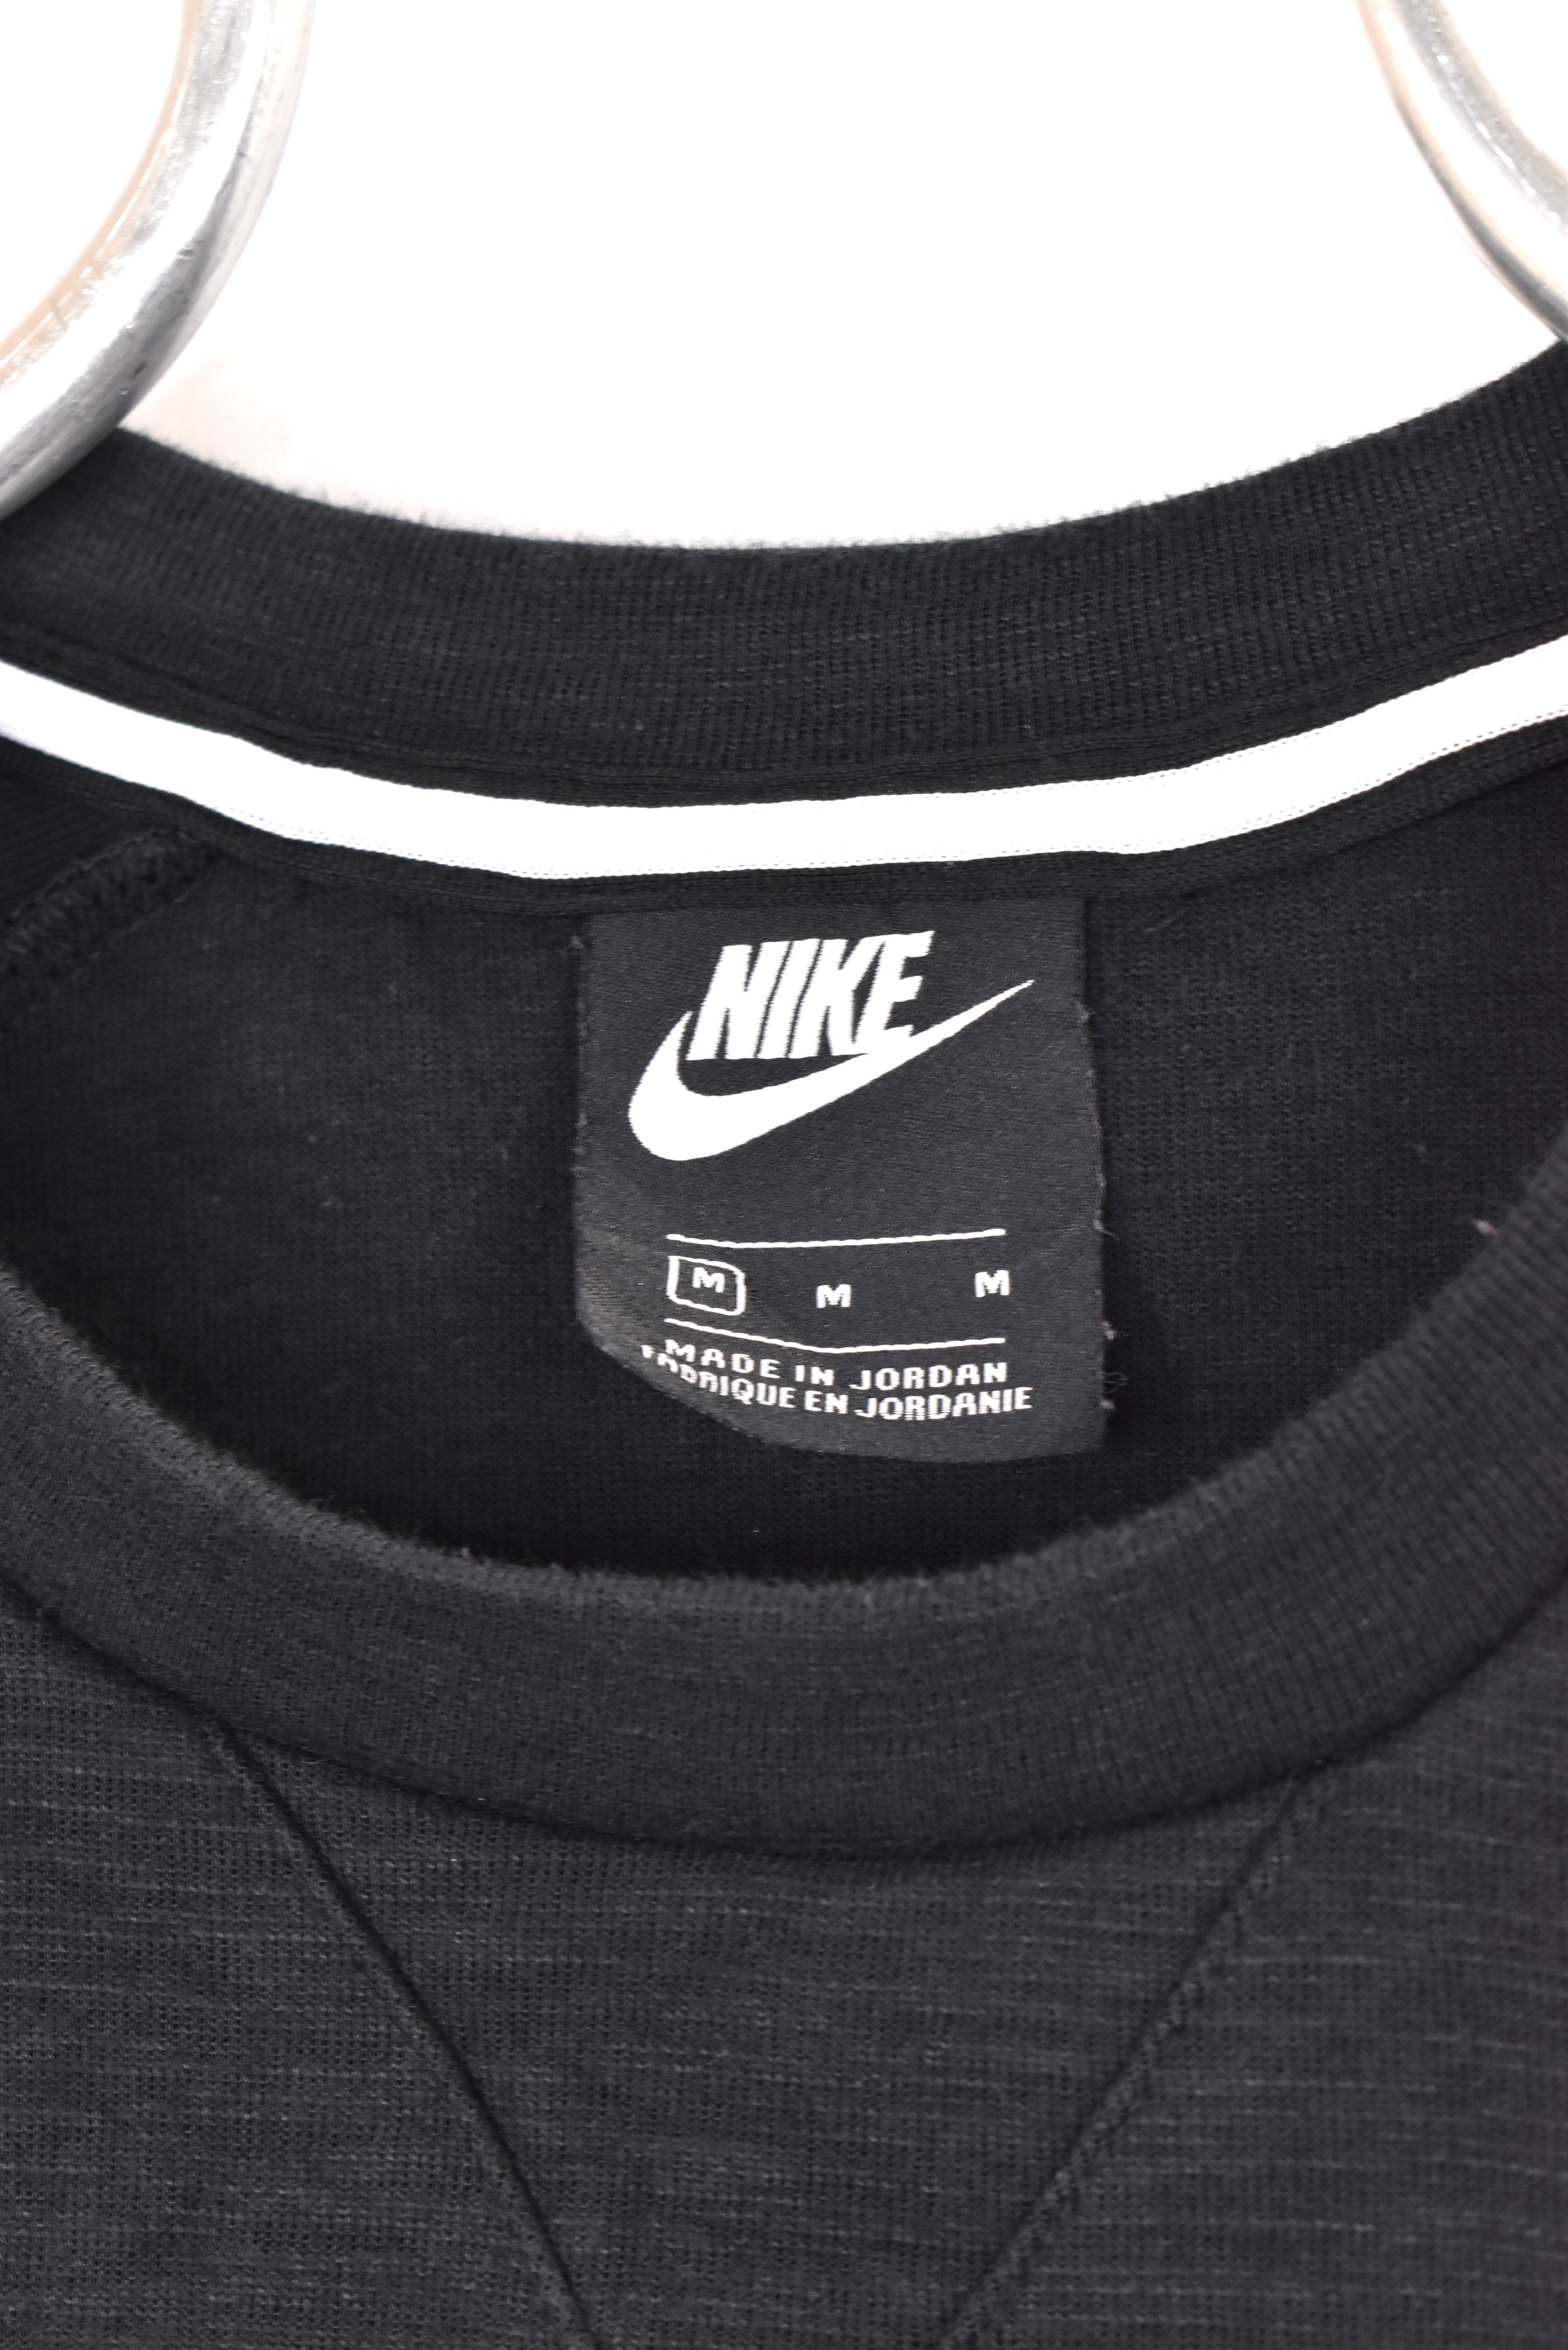 Vintage Nike sweatshirt, black basic crewneck - AU Medium NIKE